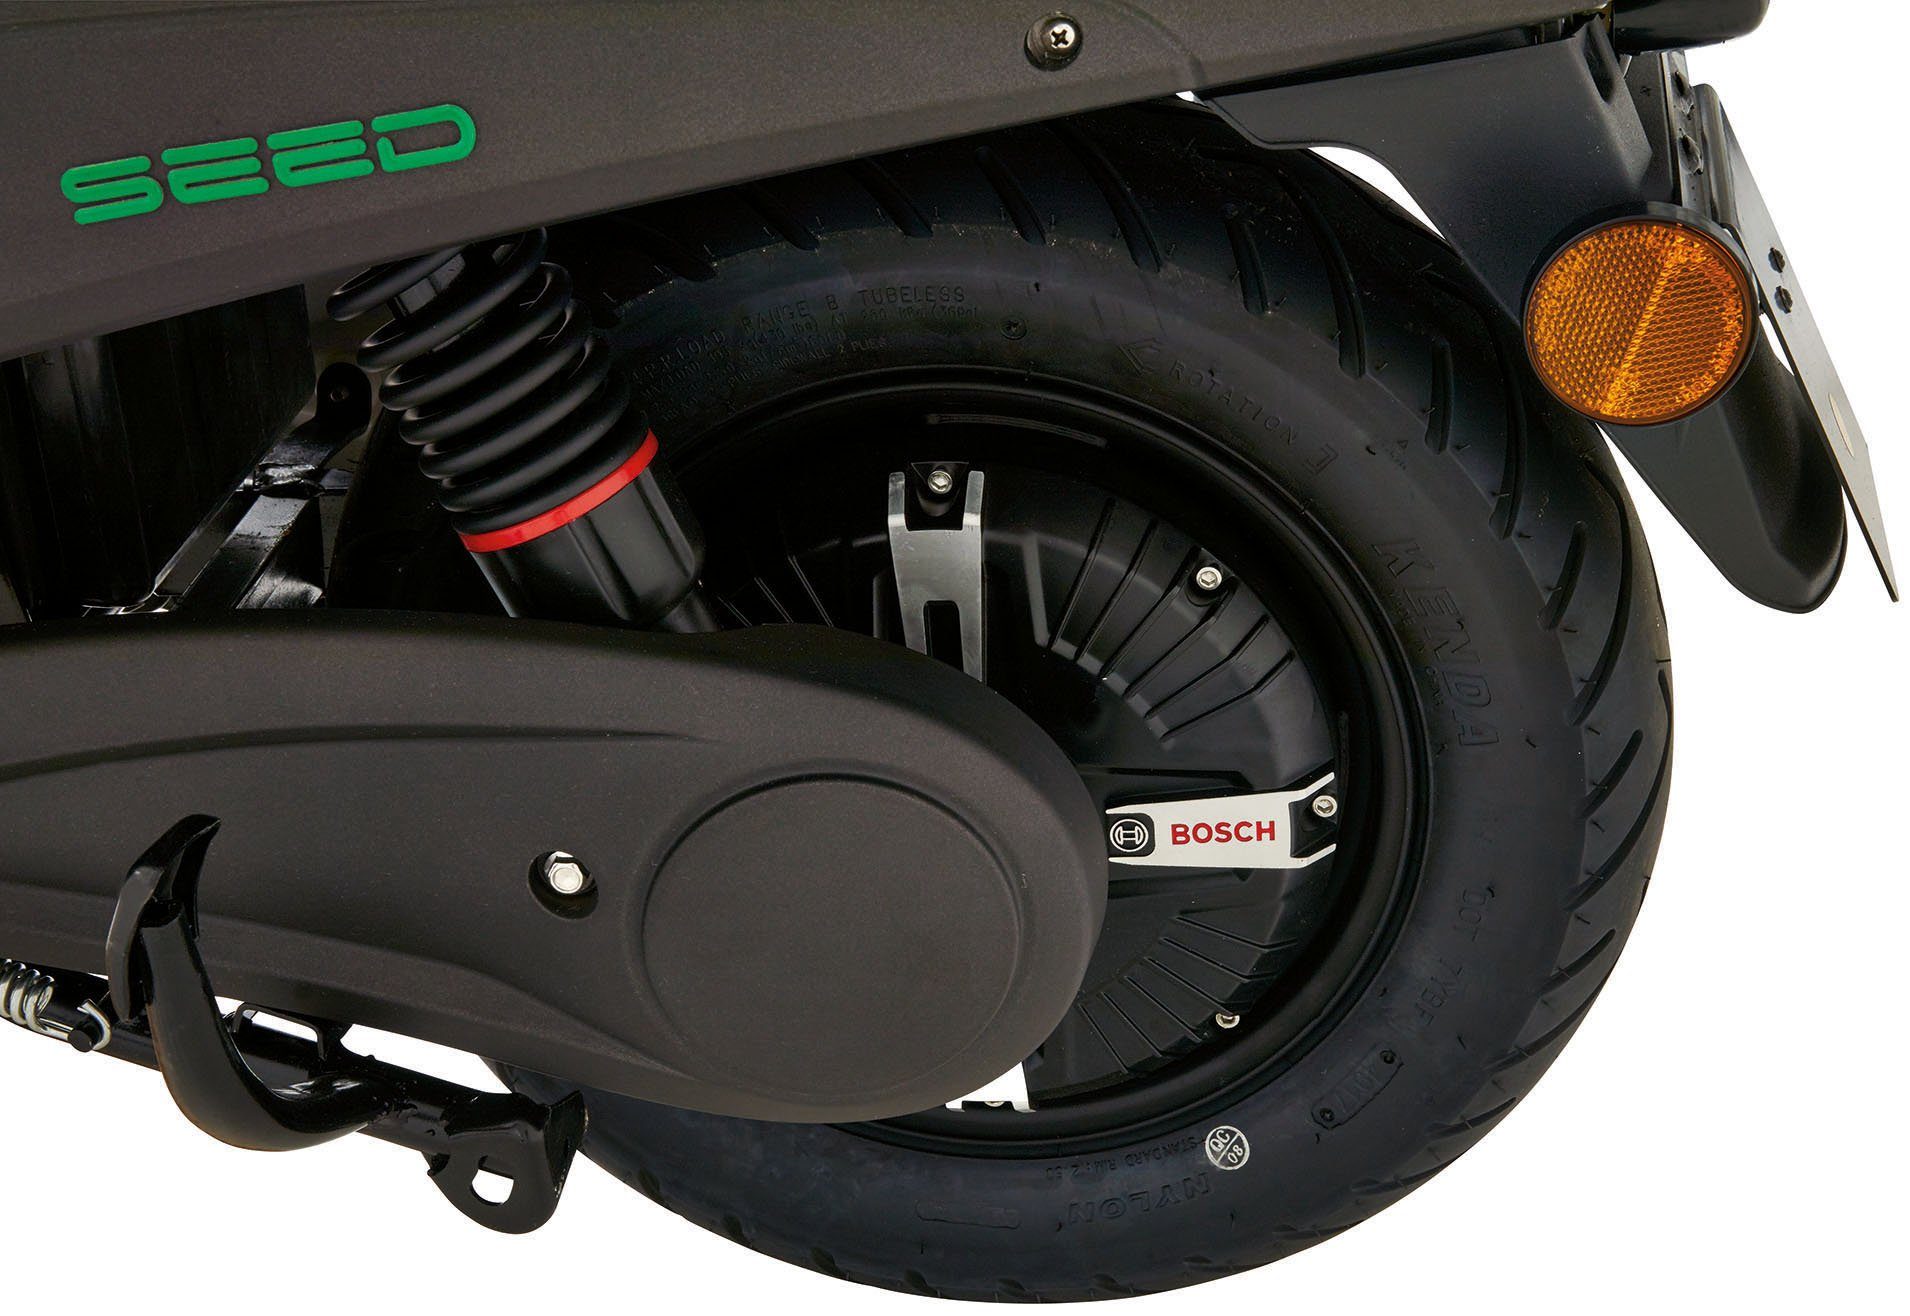 GreenStreet E-Motorroller W, schwarz 45 km/h SEED, 1200